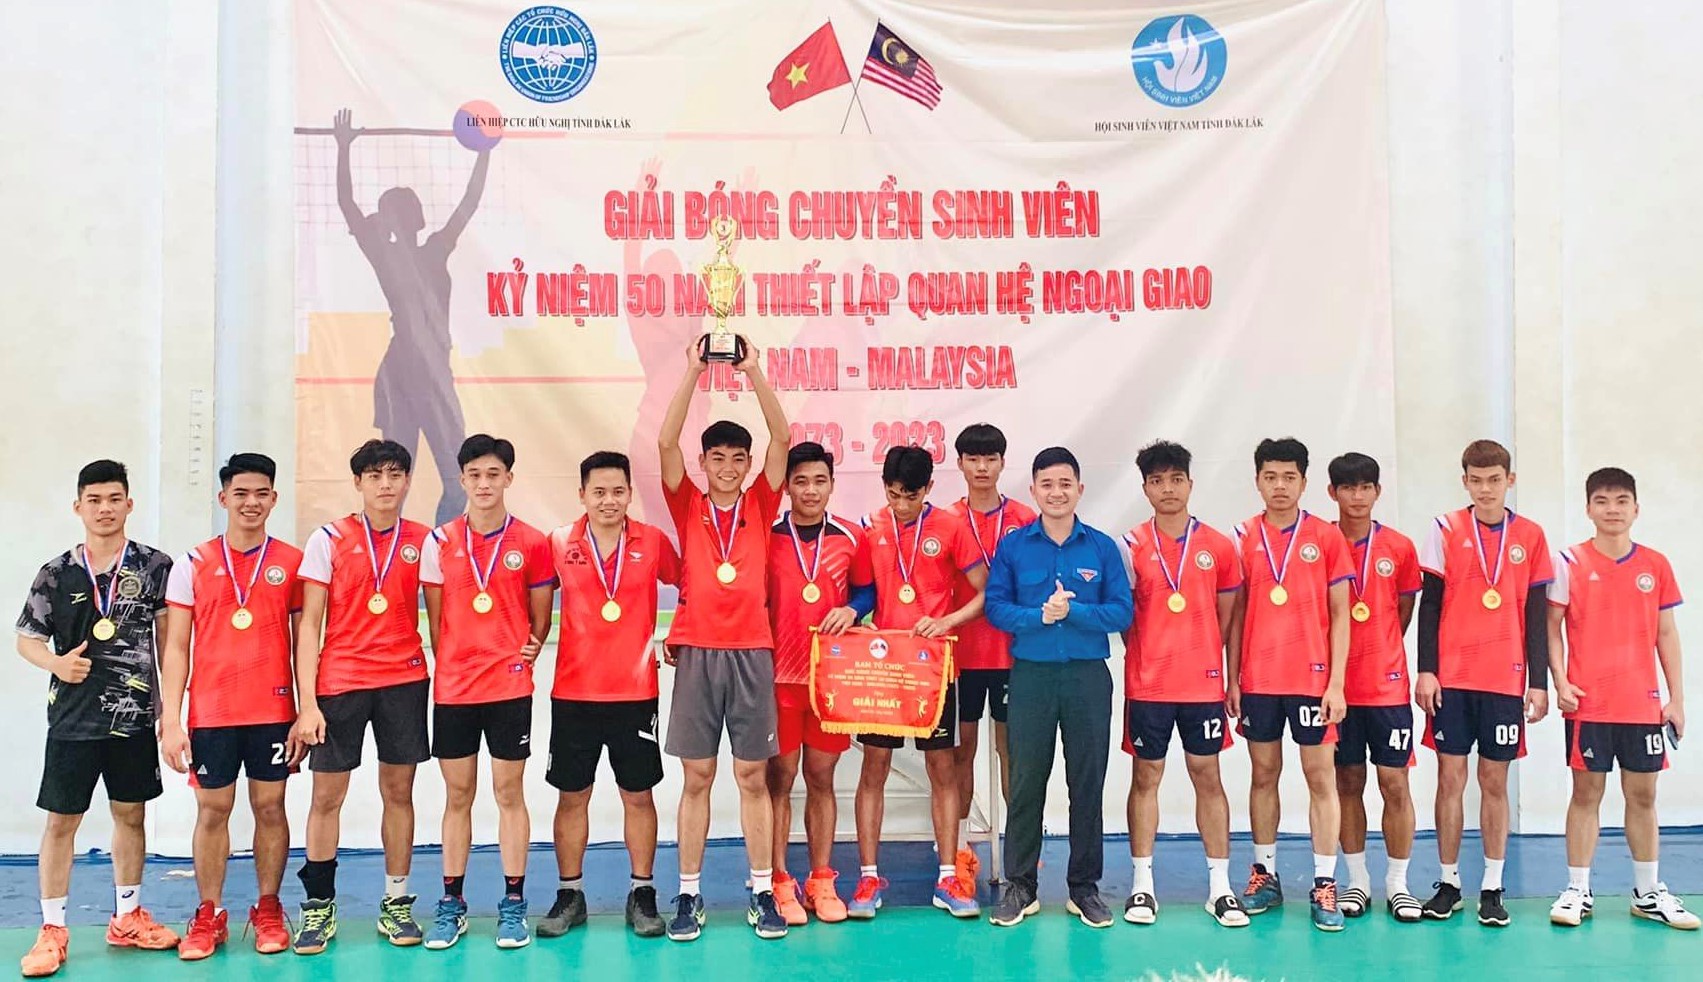 Sôi nổi Giải bóng chuyền sinh viên tỉnh Đắk Lắk